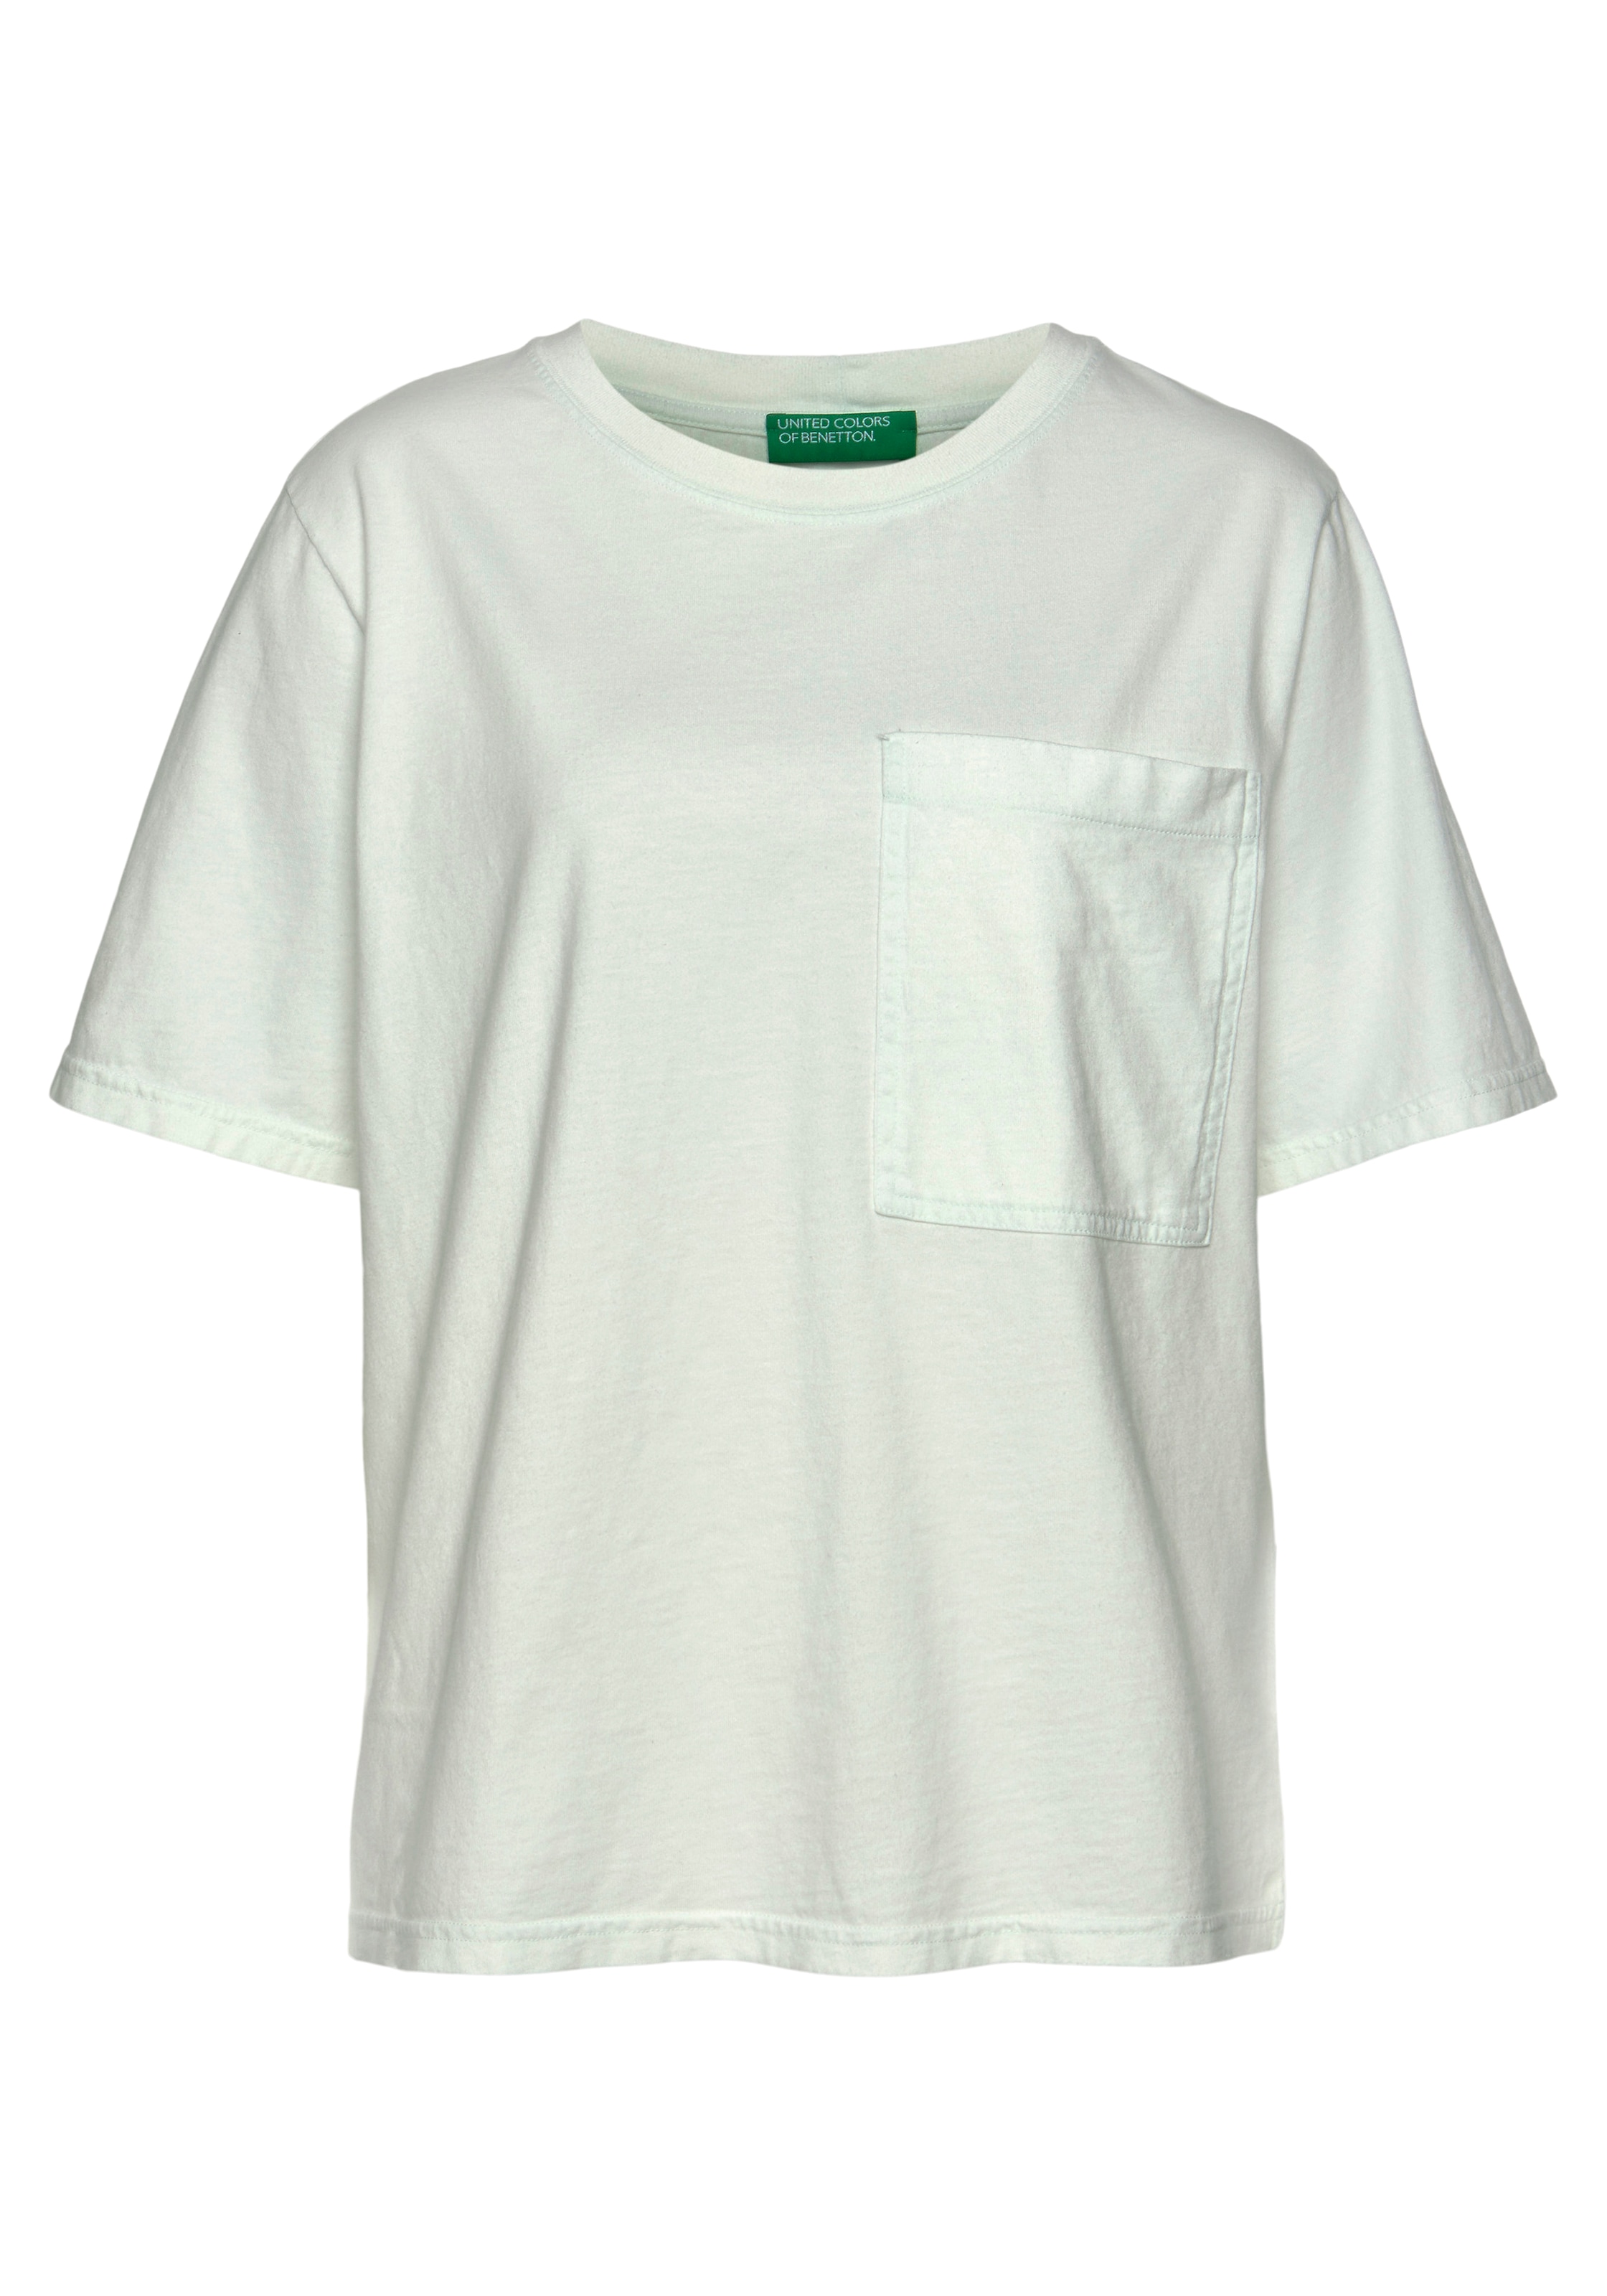 aufgesetzten T-Shirt, of Brusttasche bei Benetton United einer ♕ großen, mit Colors